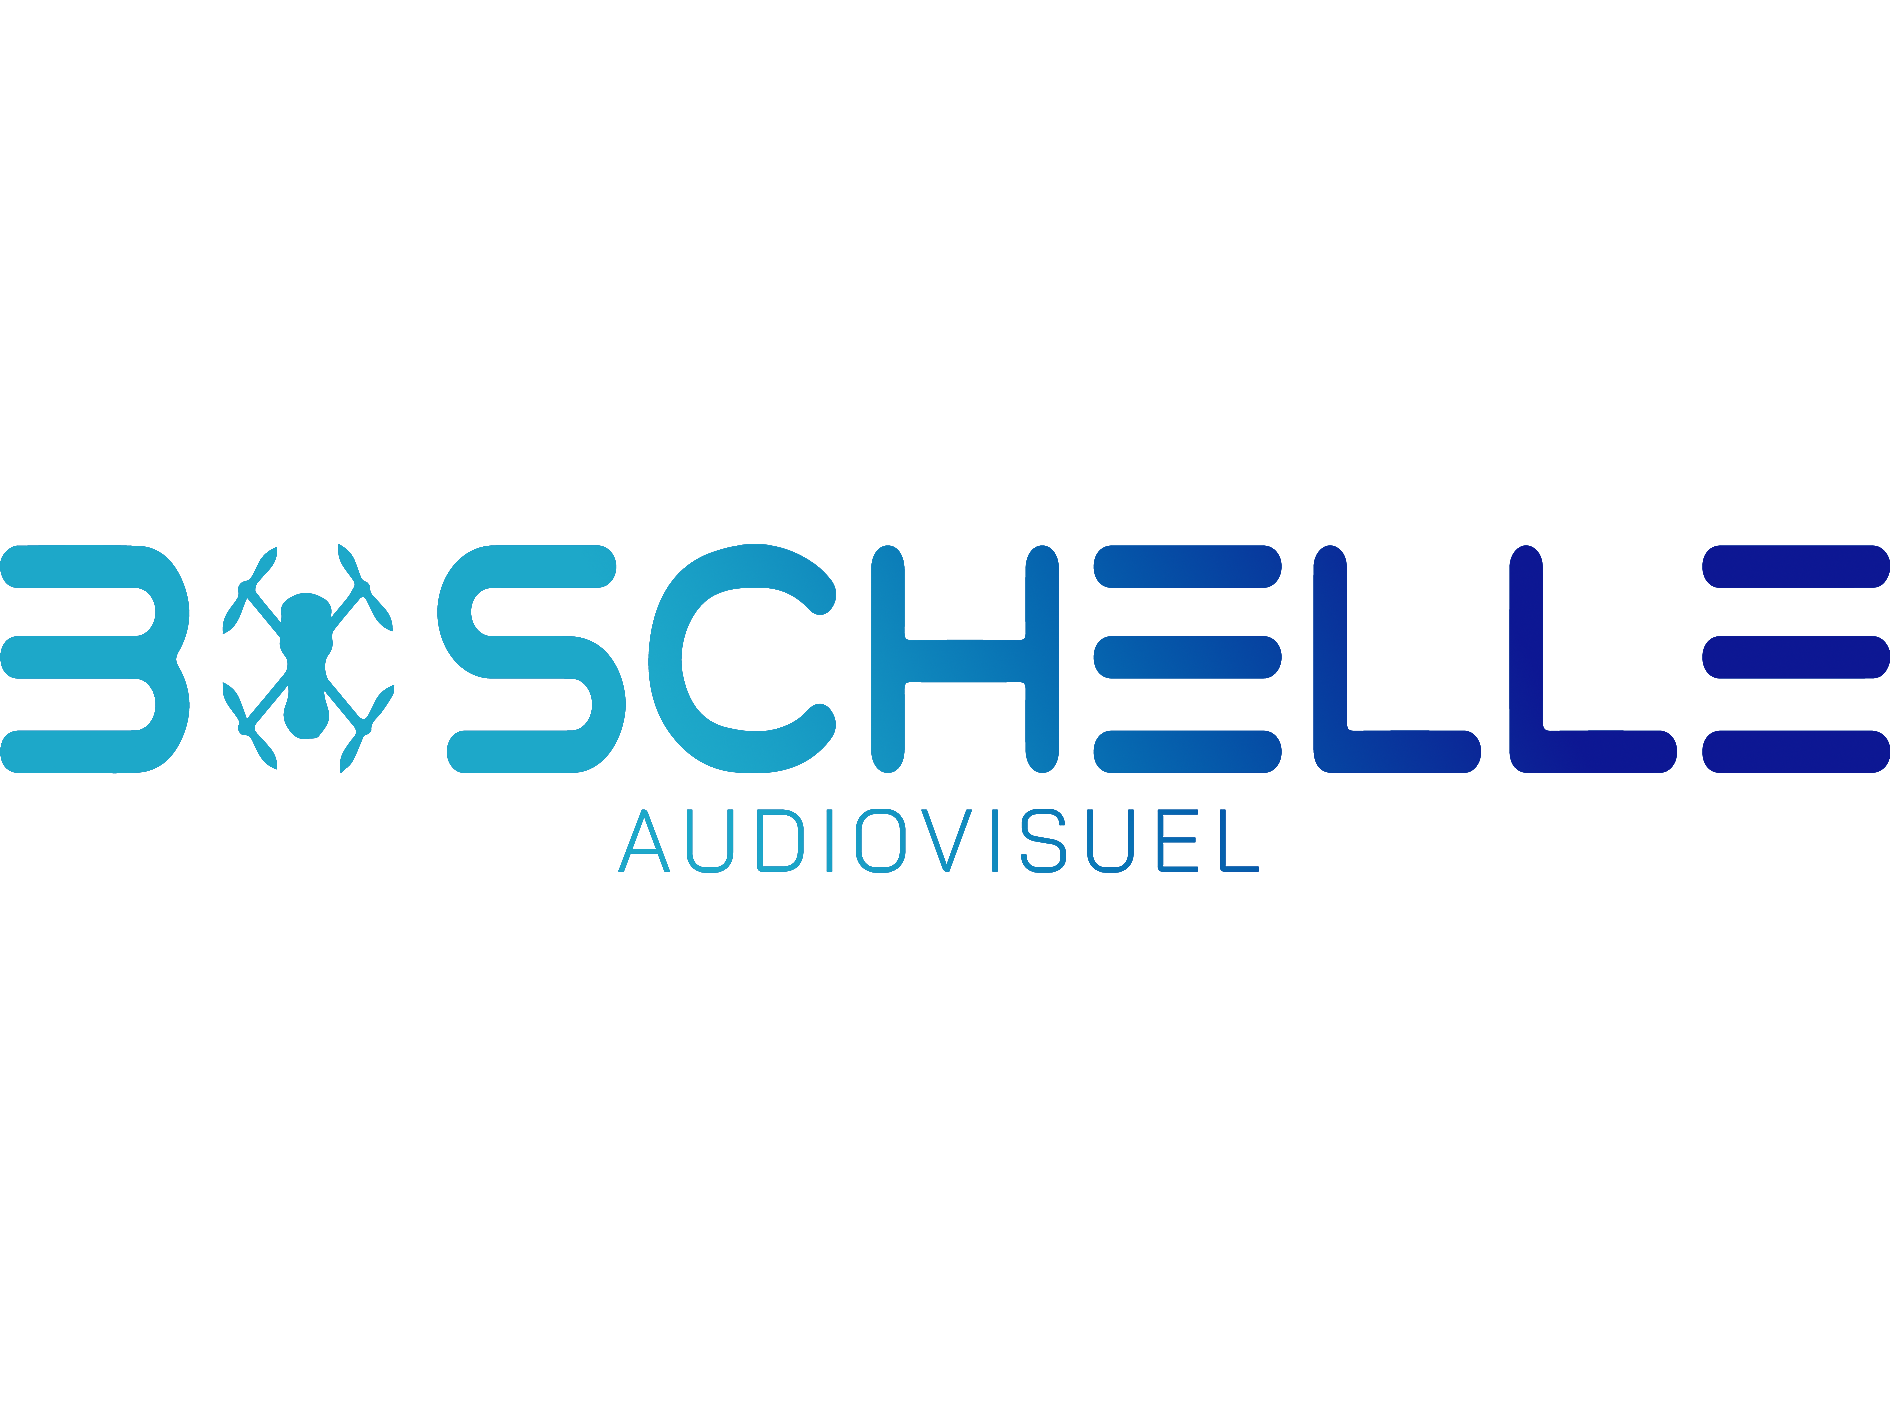 Boschelle Audiovisuel